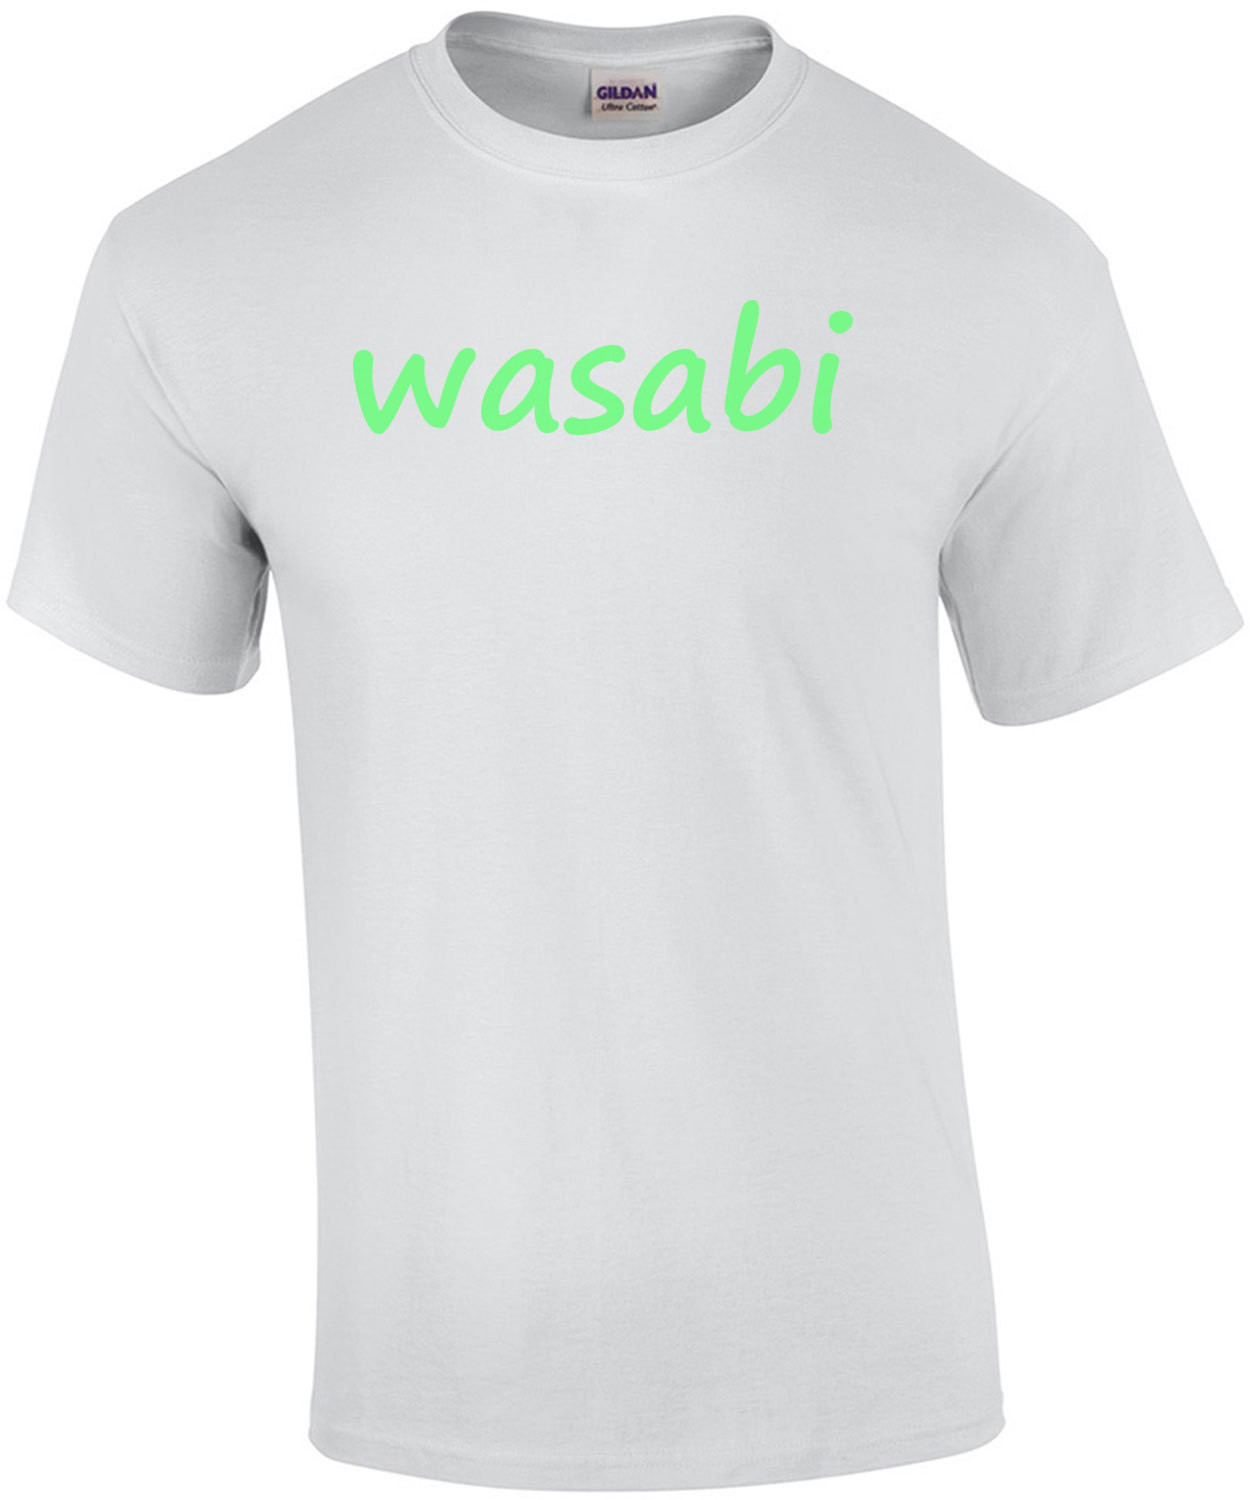 Wasabi T-Shirt. Cool Wasabi shirt